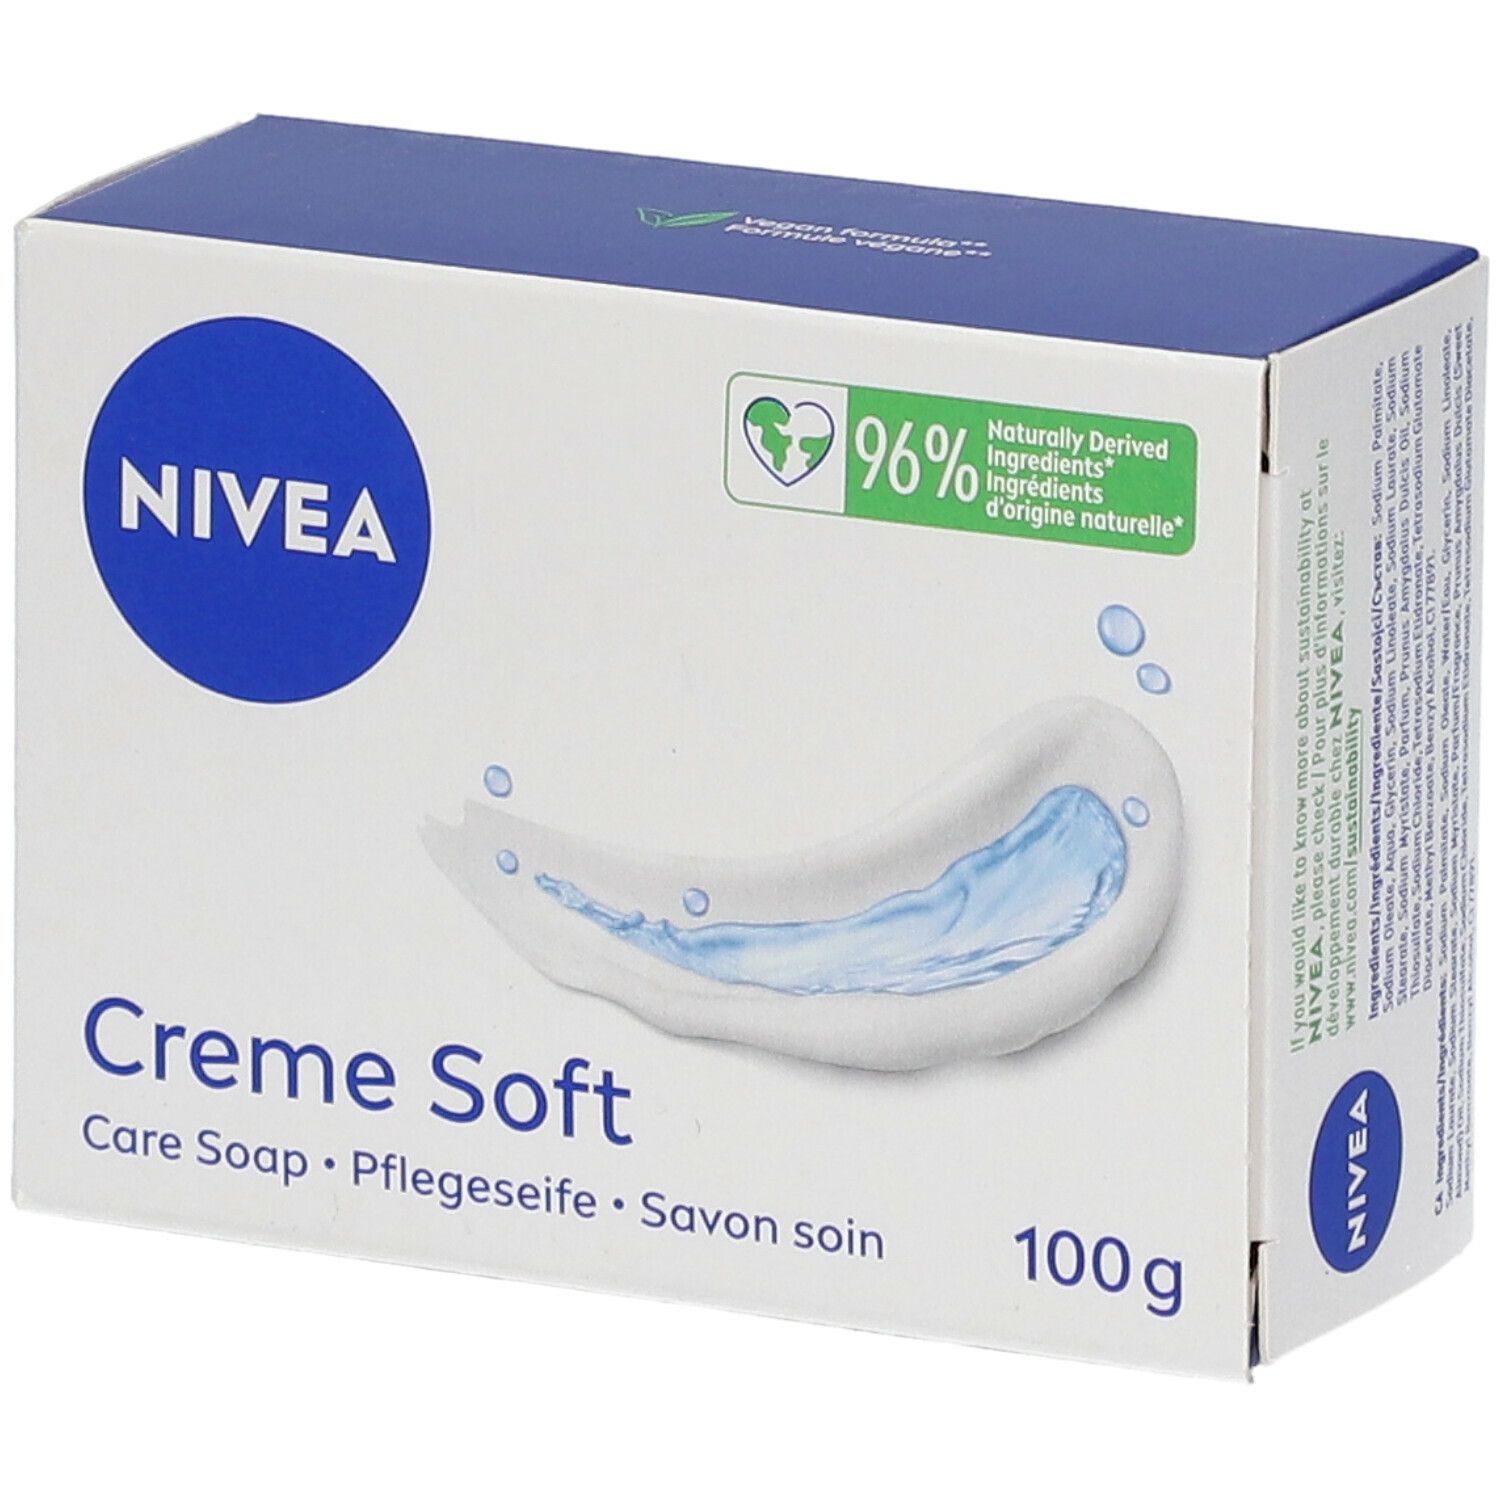 Nivea Creme Soft Savon soin